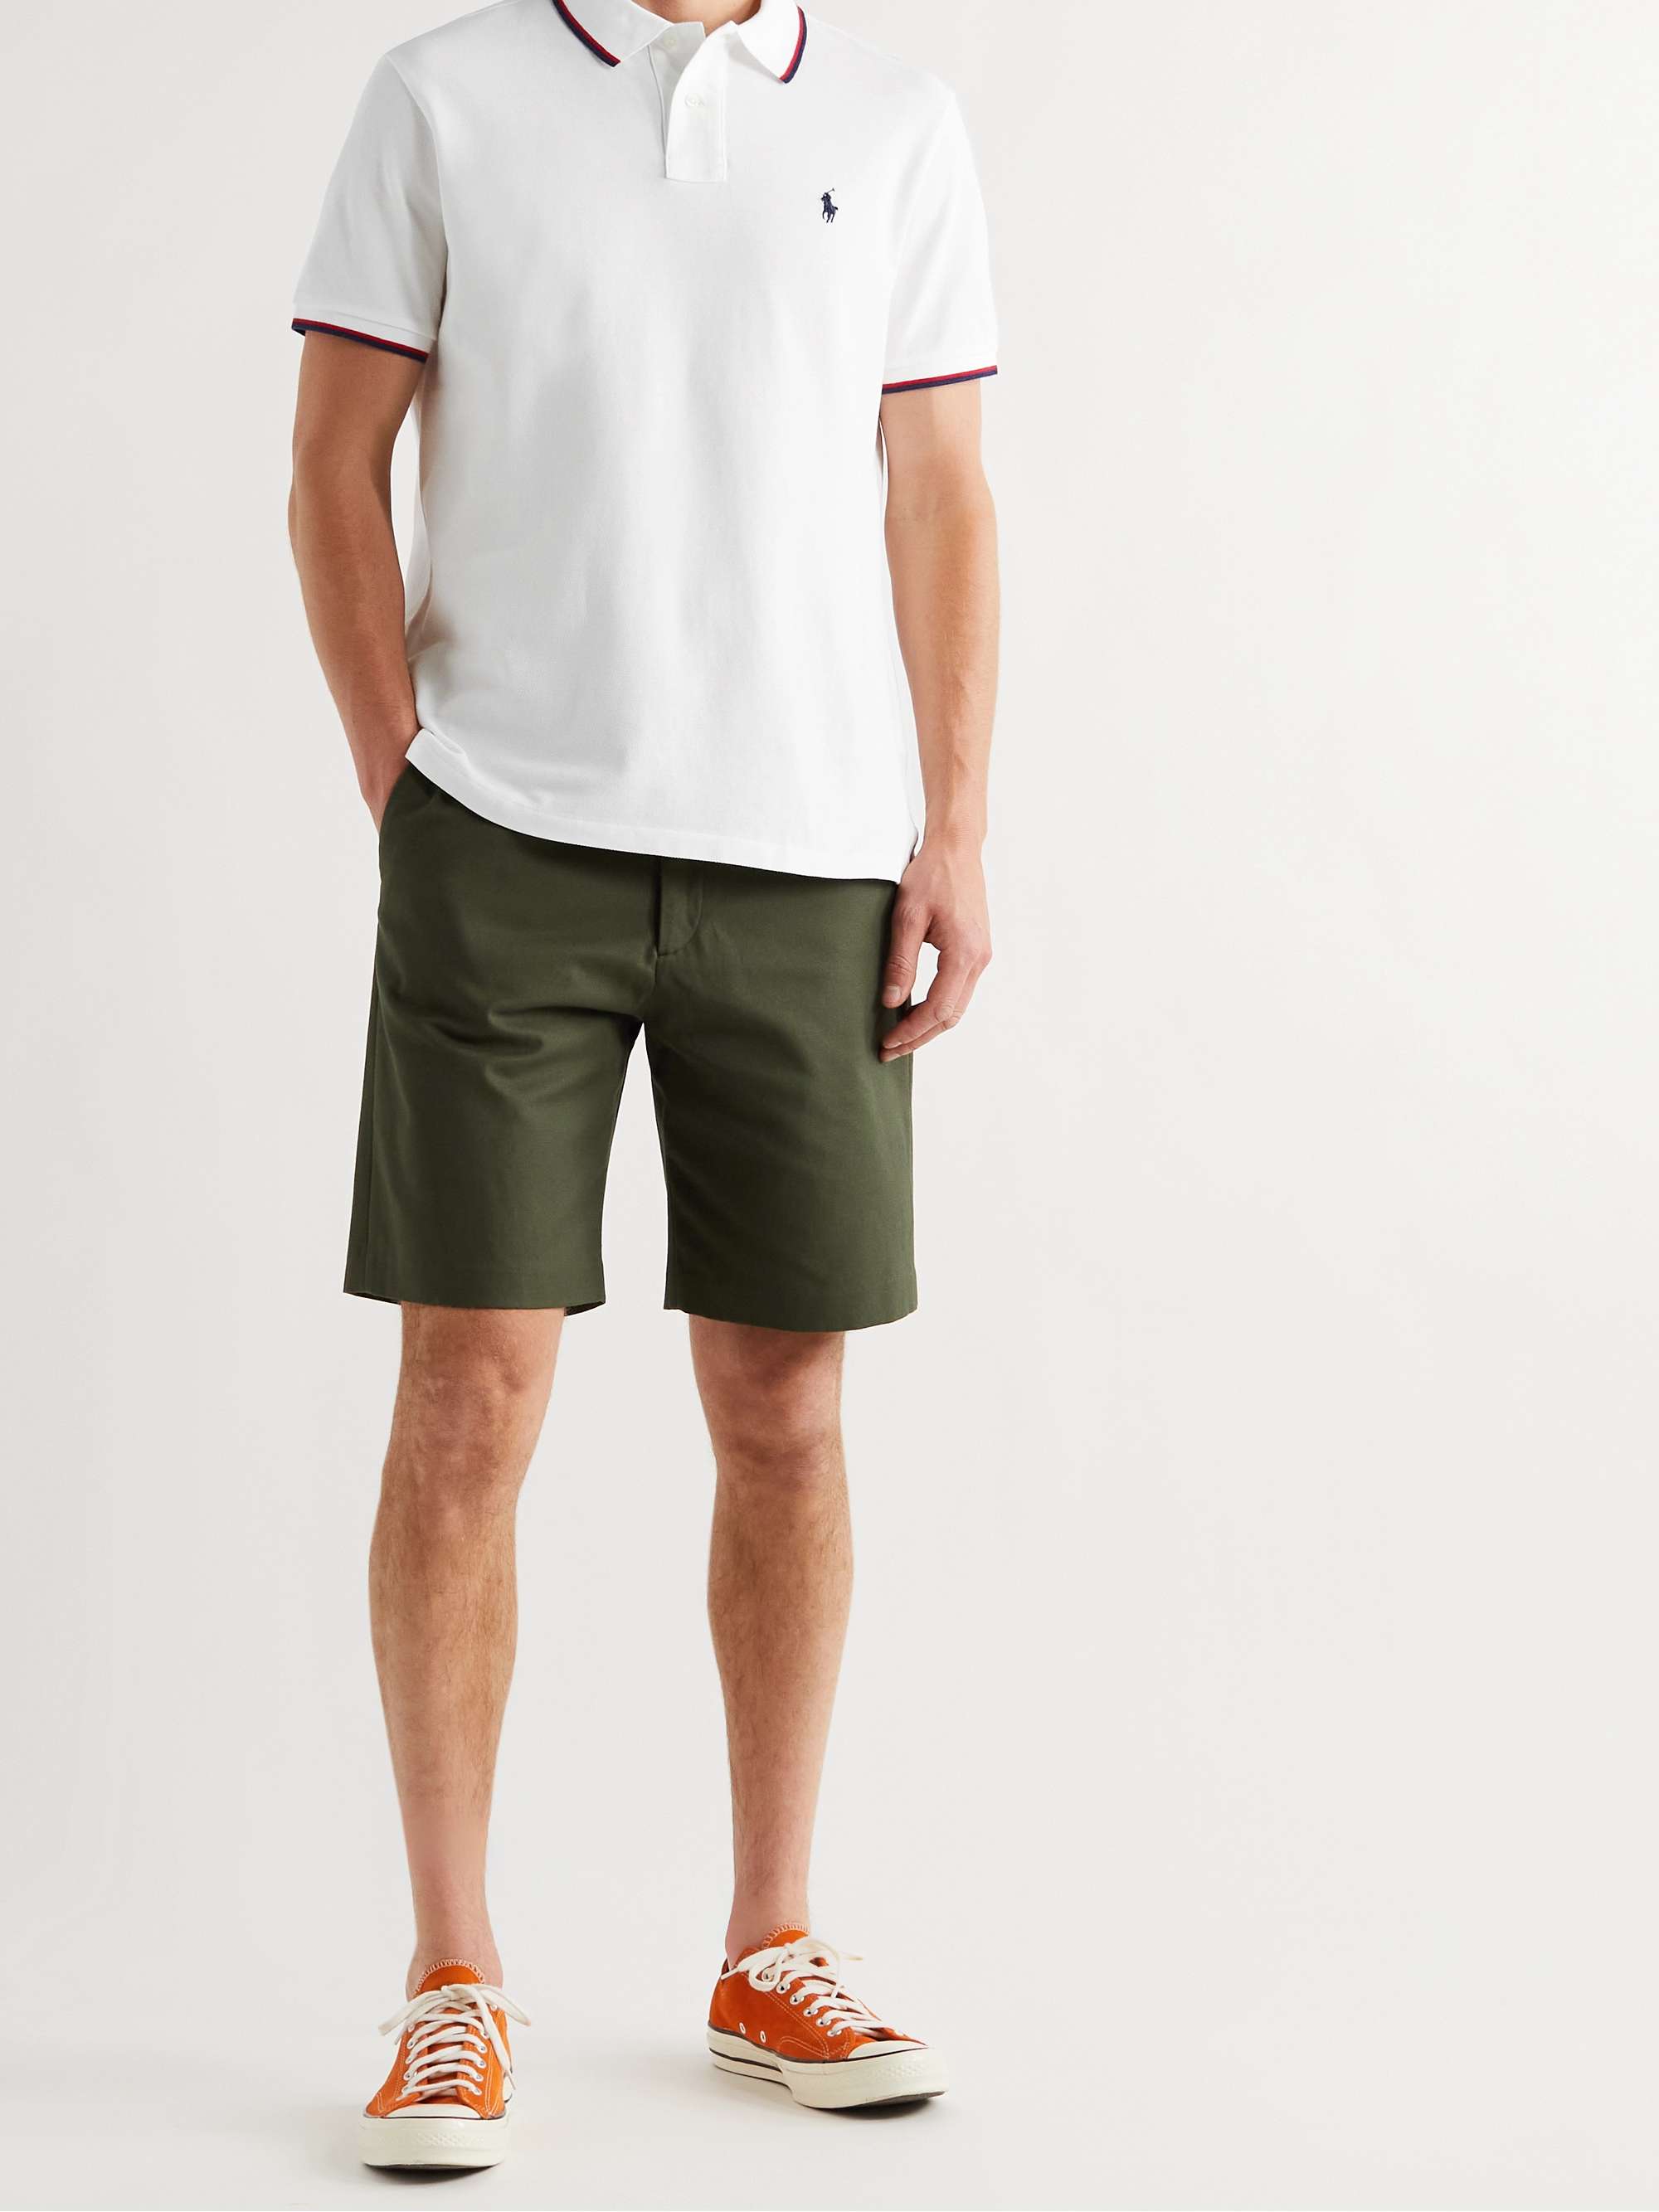 POLO RALPH LAUREN Slim-Fit Contrast-Tipped Cotton-Piqué Polo Shirt | MR  PORTER